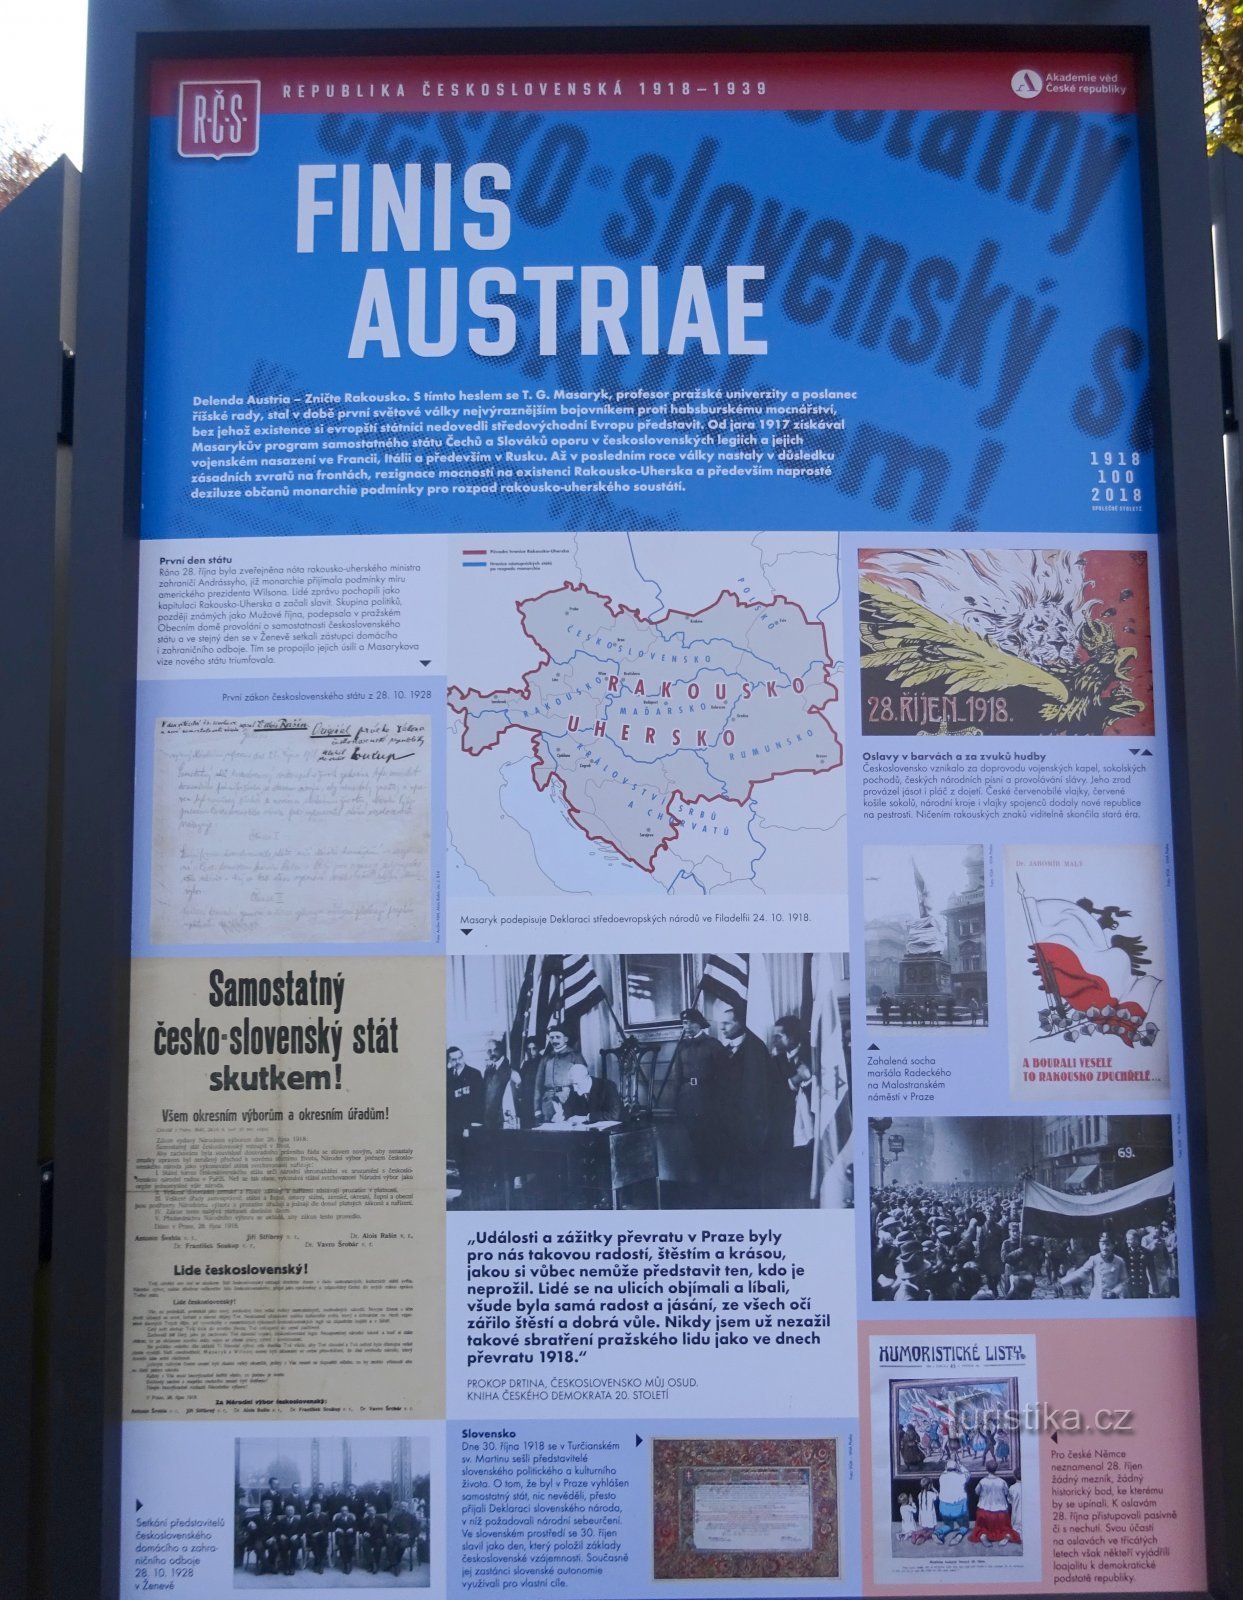 Ausztria-Magyarország felbomlása